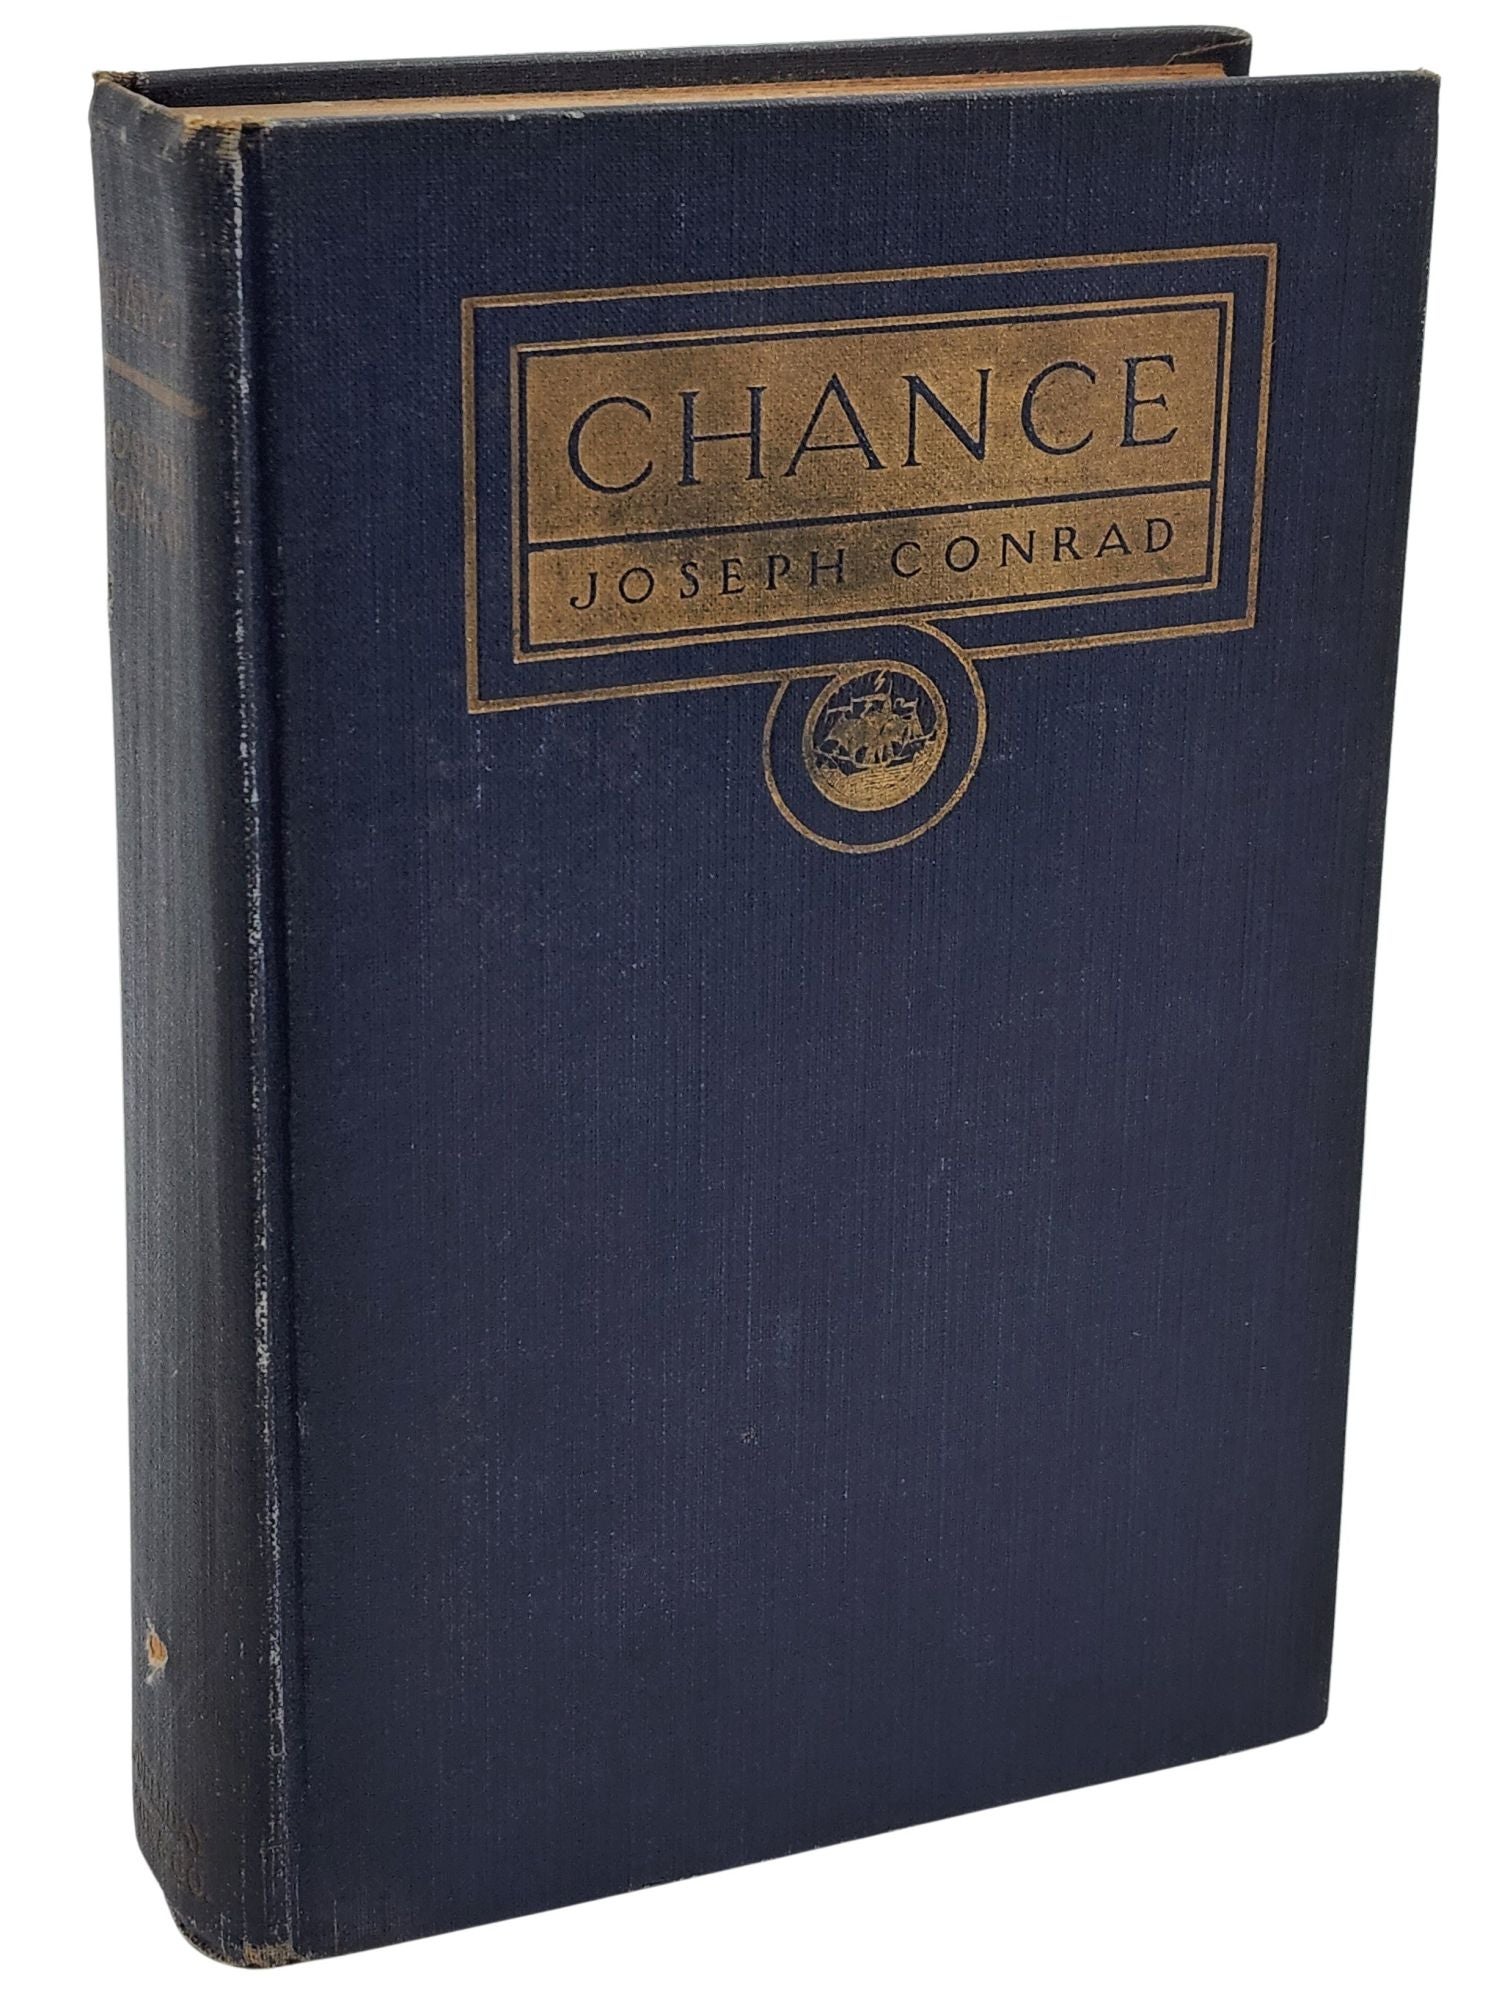 [Book #50749] CHANCE: A TALE IN TWO PARTS. Joseph Conrad.